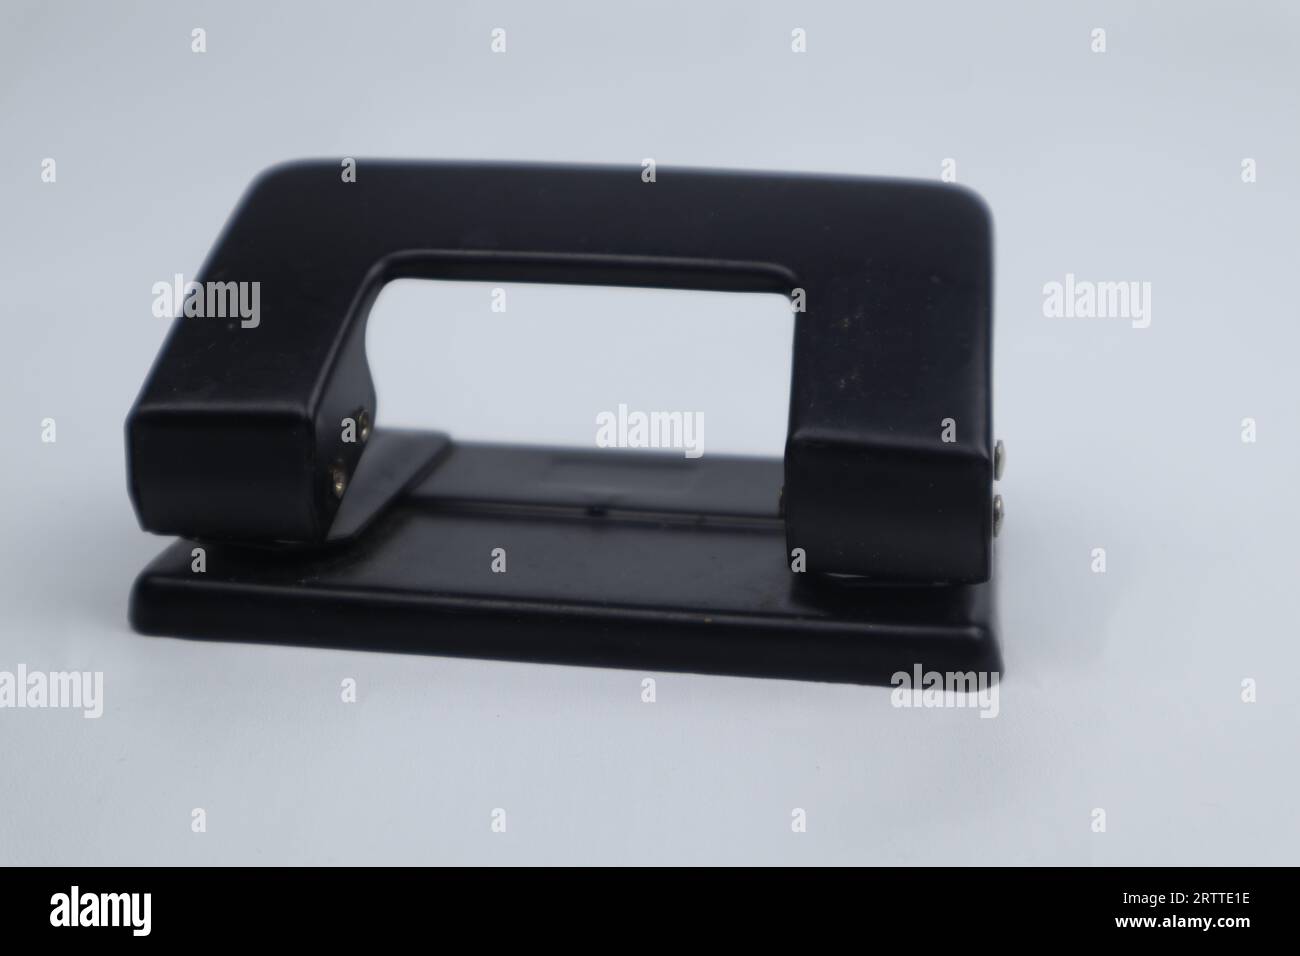 Perforadora se utiliza para perforar hoja de papel en blanco, fondo  amarillo Fotografía de stock - Alamy